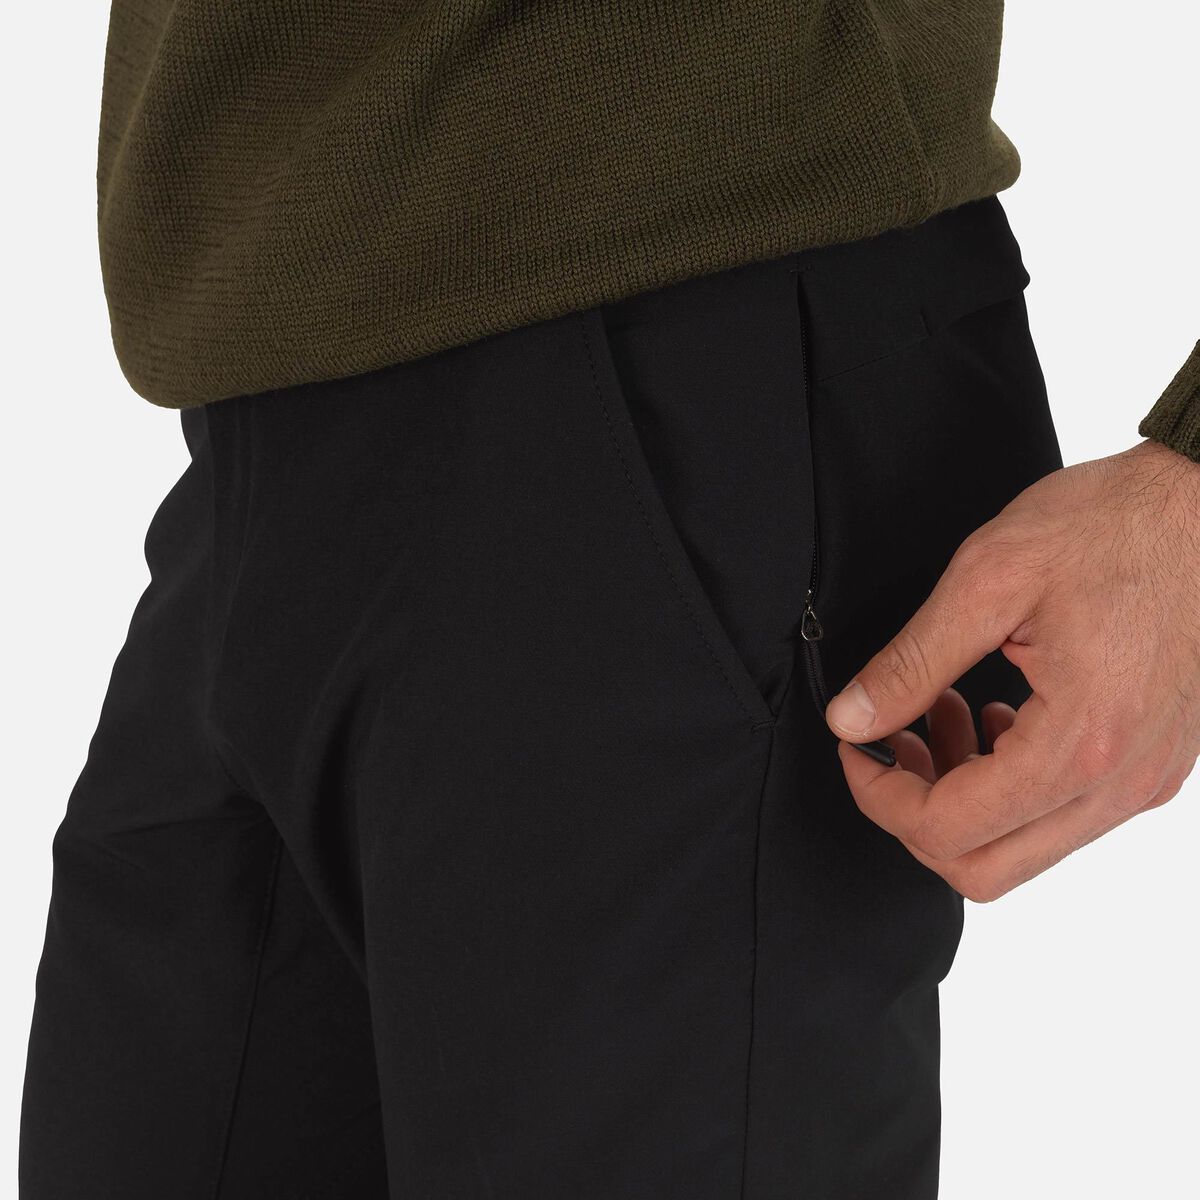 Men's Tech Four-Way Stretch Pants